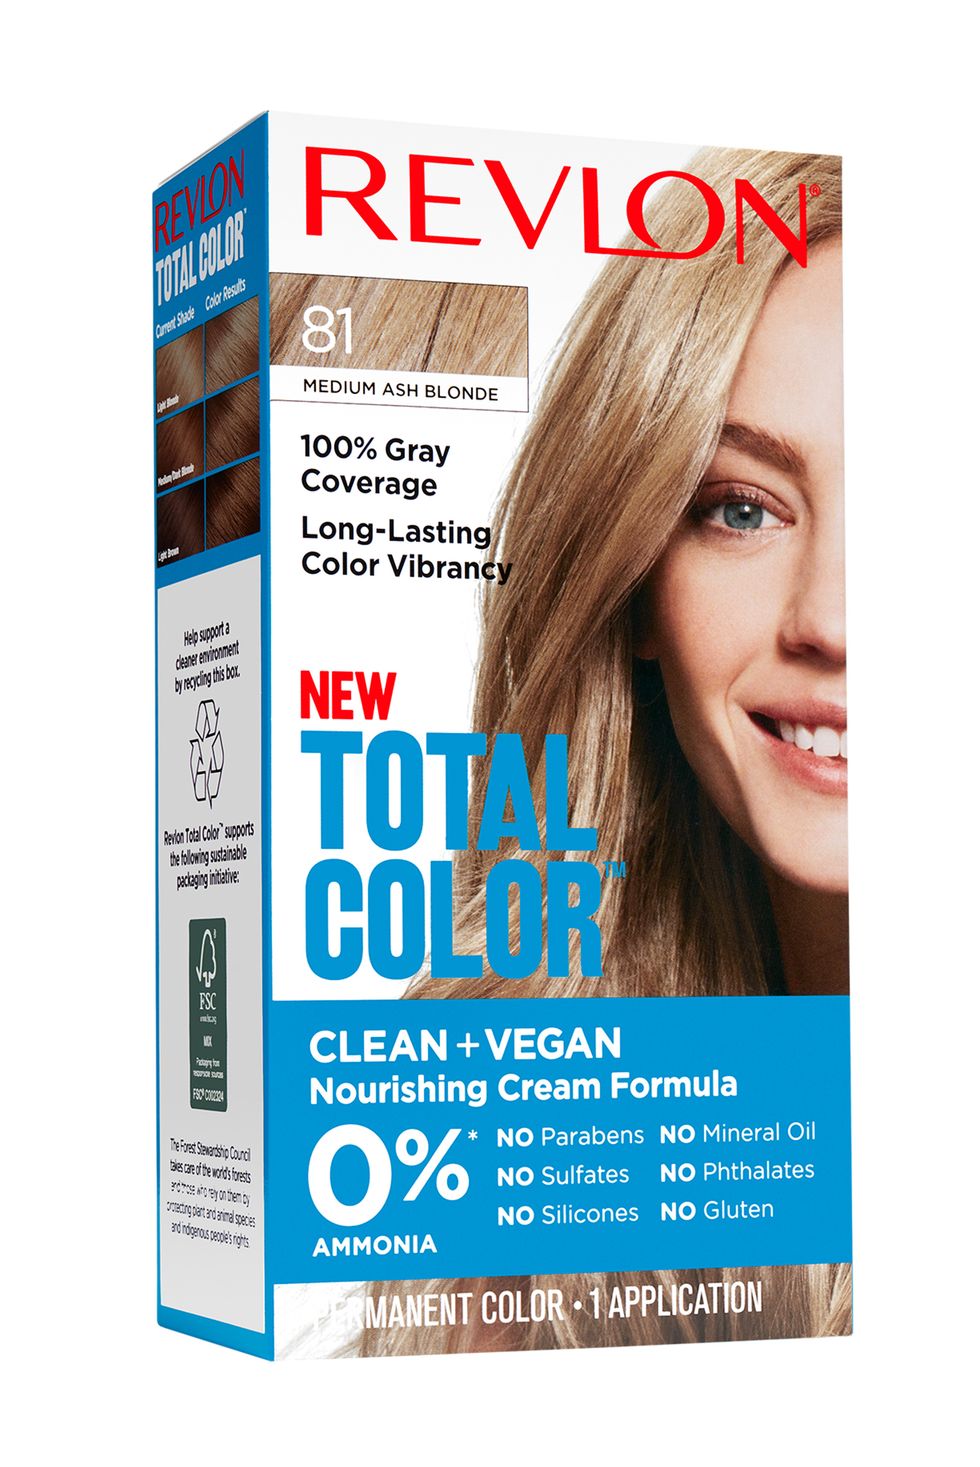 Revlon Total Color Permanent Hair Color